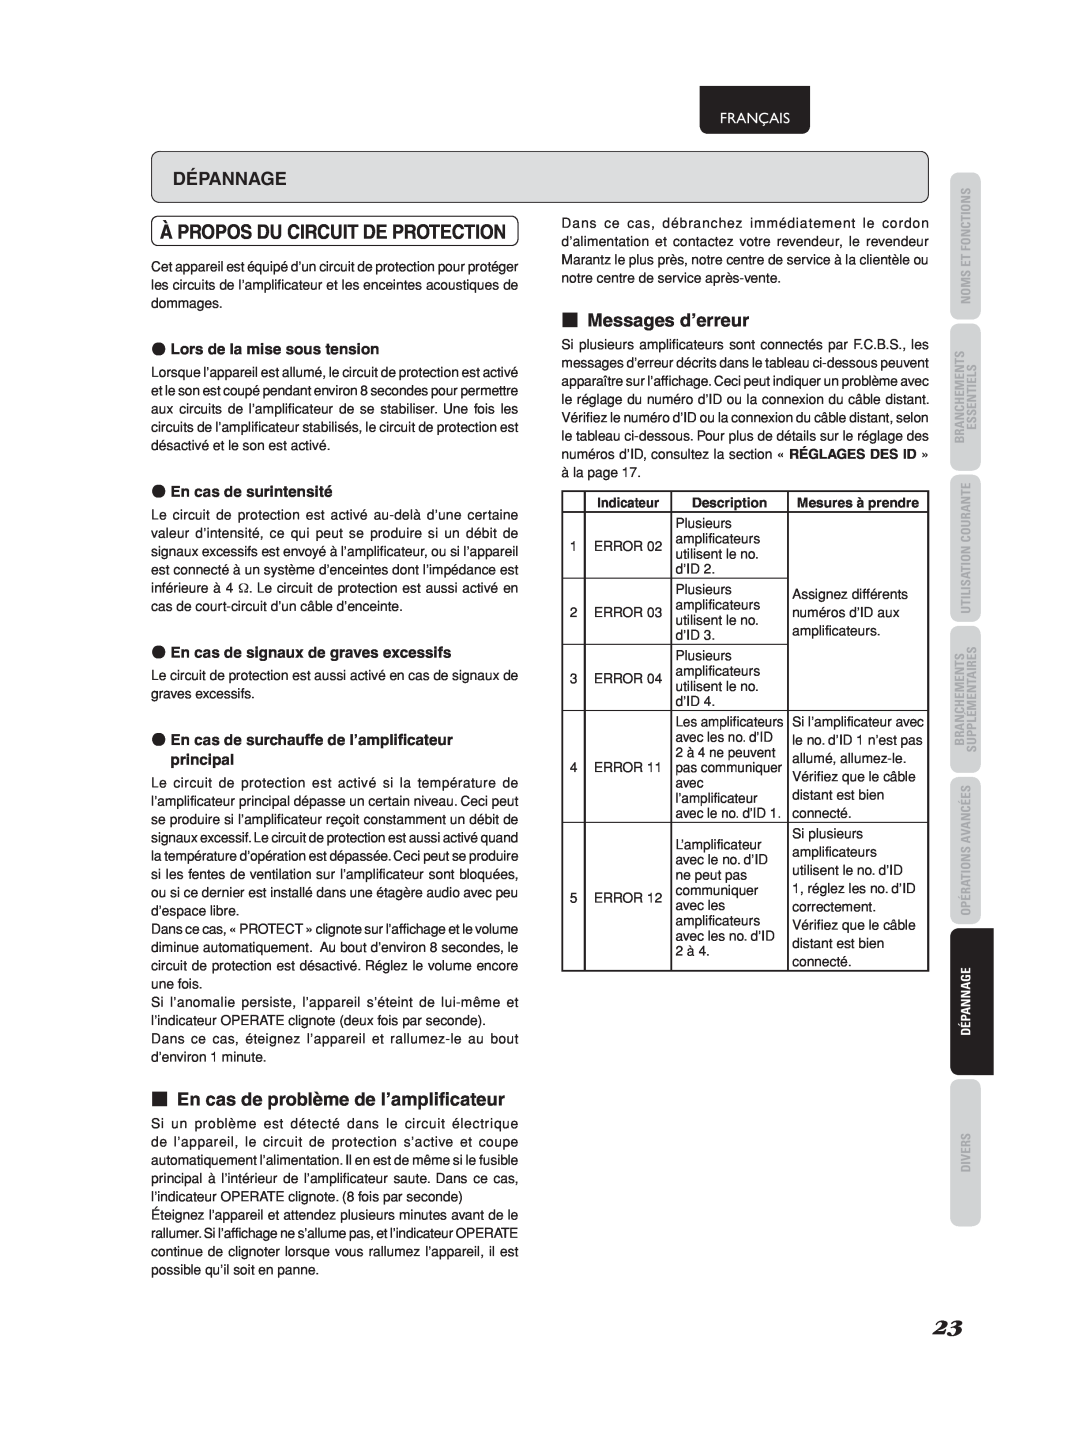 Marantz 541110275035M manual À Propos Du Circuit De Protection, Dépannage, 7En cas de problème de l’amplificateur, Français 